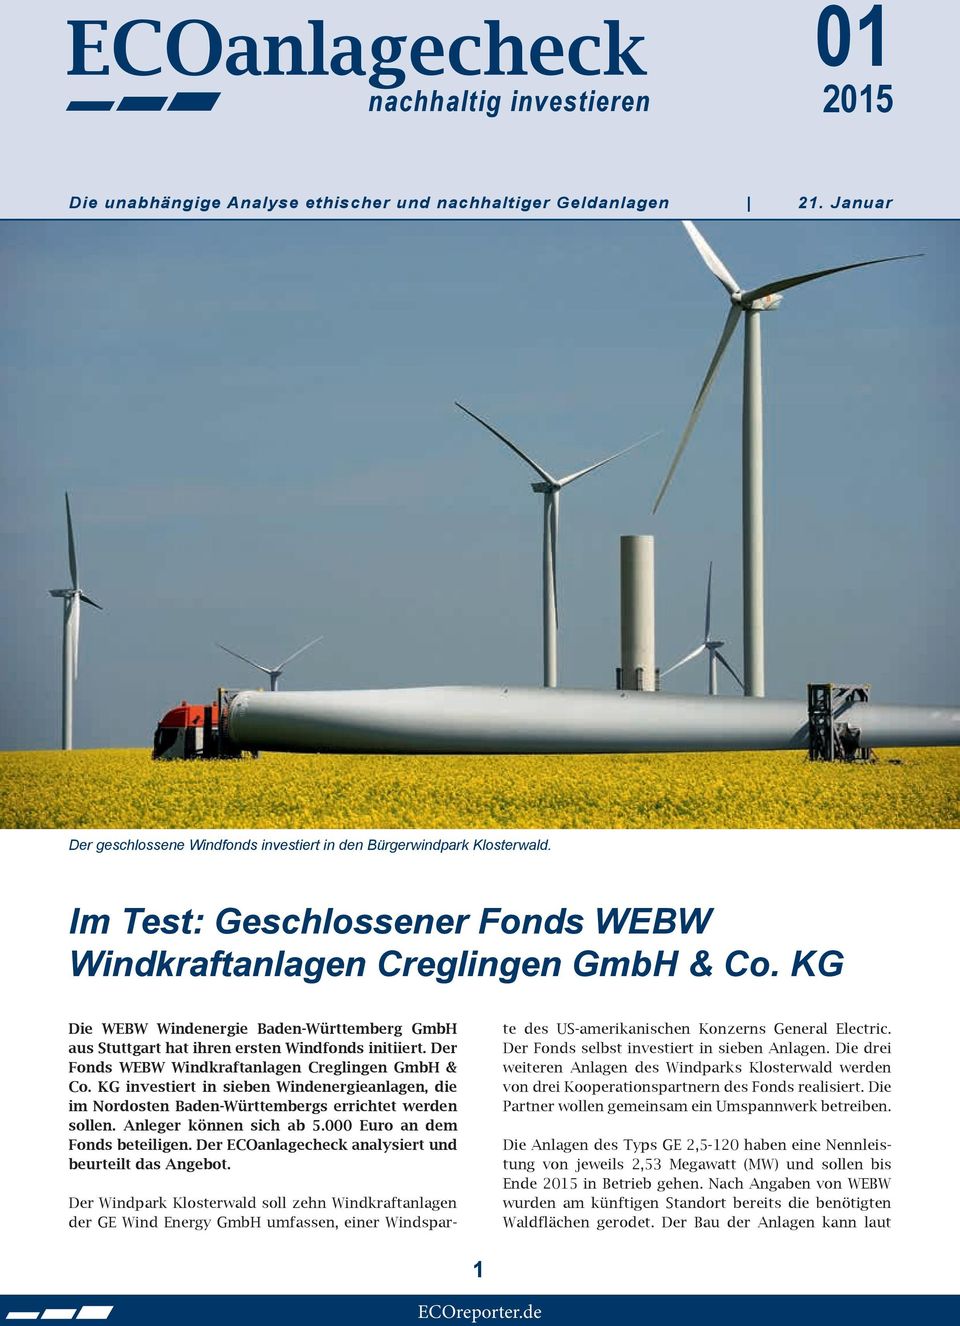 Der Fonds WEBW Windkraftanlagen Creglingen GmbH & Co. KG investiert in sieben Windenergieanlagen, die im Nordosten Baden-Württembergs errichtet werden sollen. Anleger können sich ab 5.